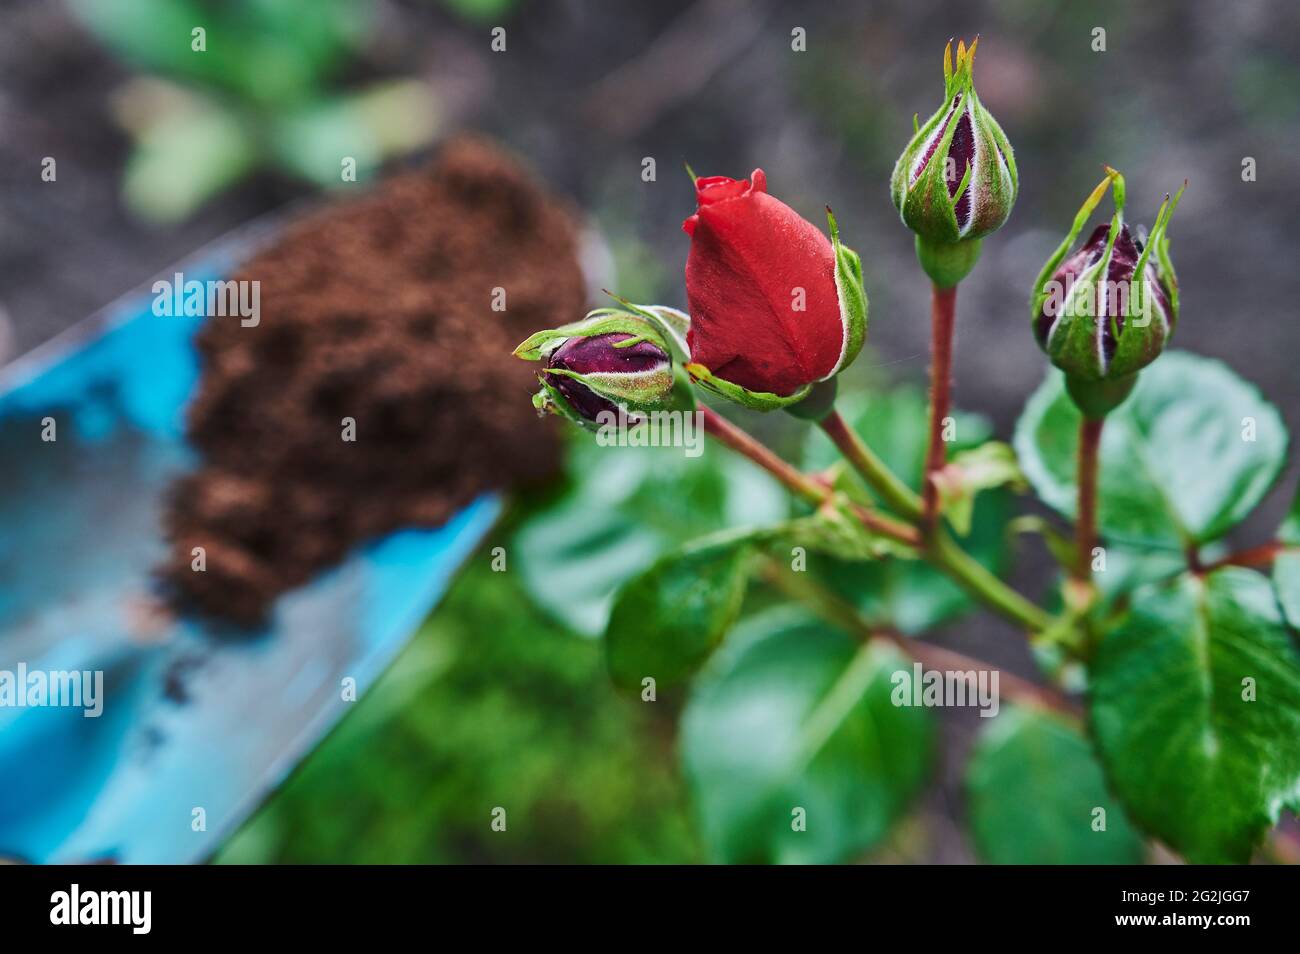 Gardening, fertilizing, rose bush, red roses, flowering, buds, blue garden shovel Stock Photo